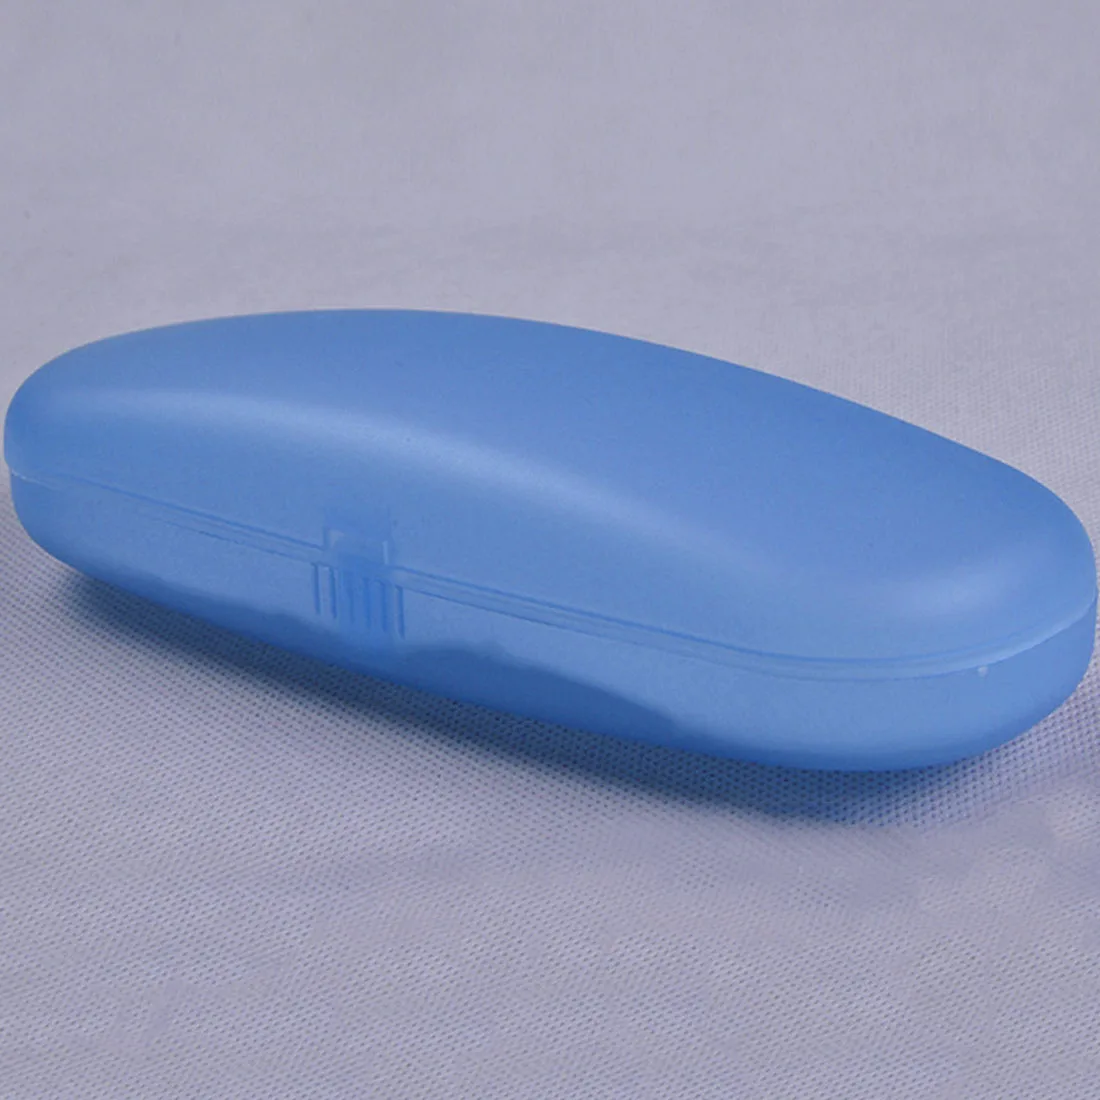 Прозрачный жесткий пластиковый простой держатель для очков, портативный чехол для хранения очков, переносной защитный футляр для очков